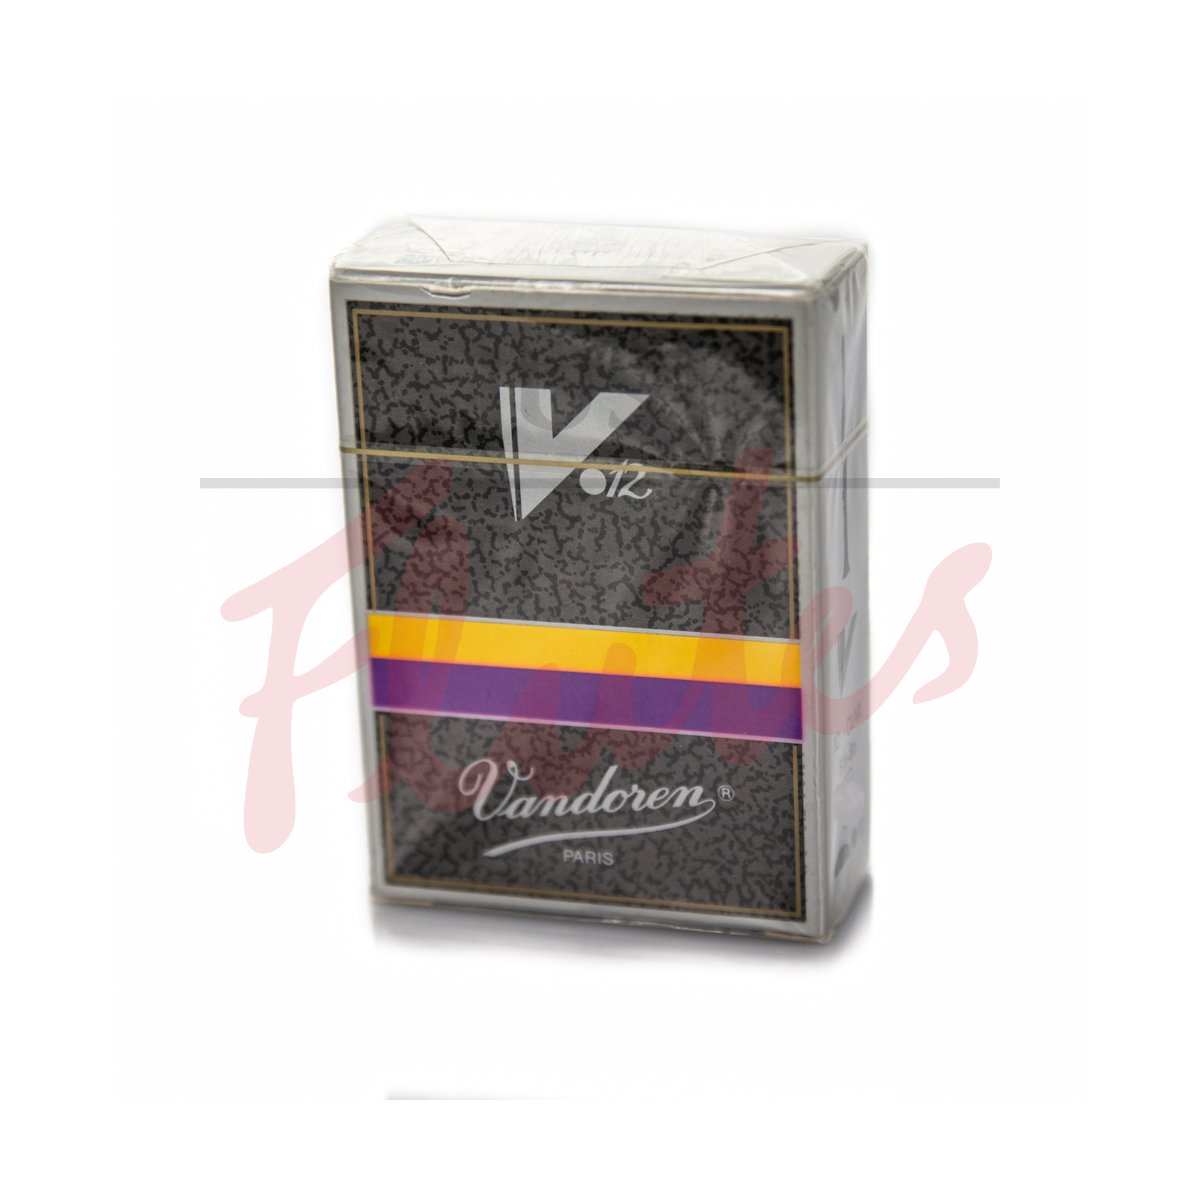 Vandoren CR195 V12 Clarinet Reeds, Strength 5, 10-Pack [Old Packaging]